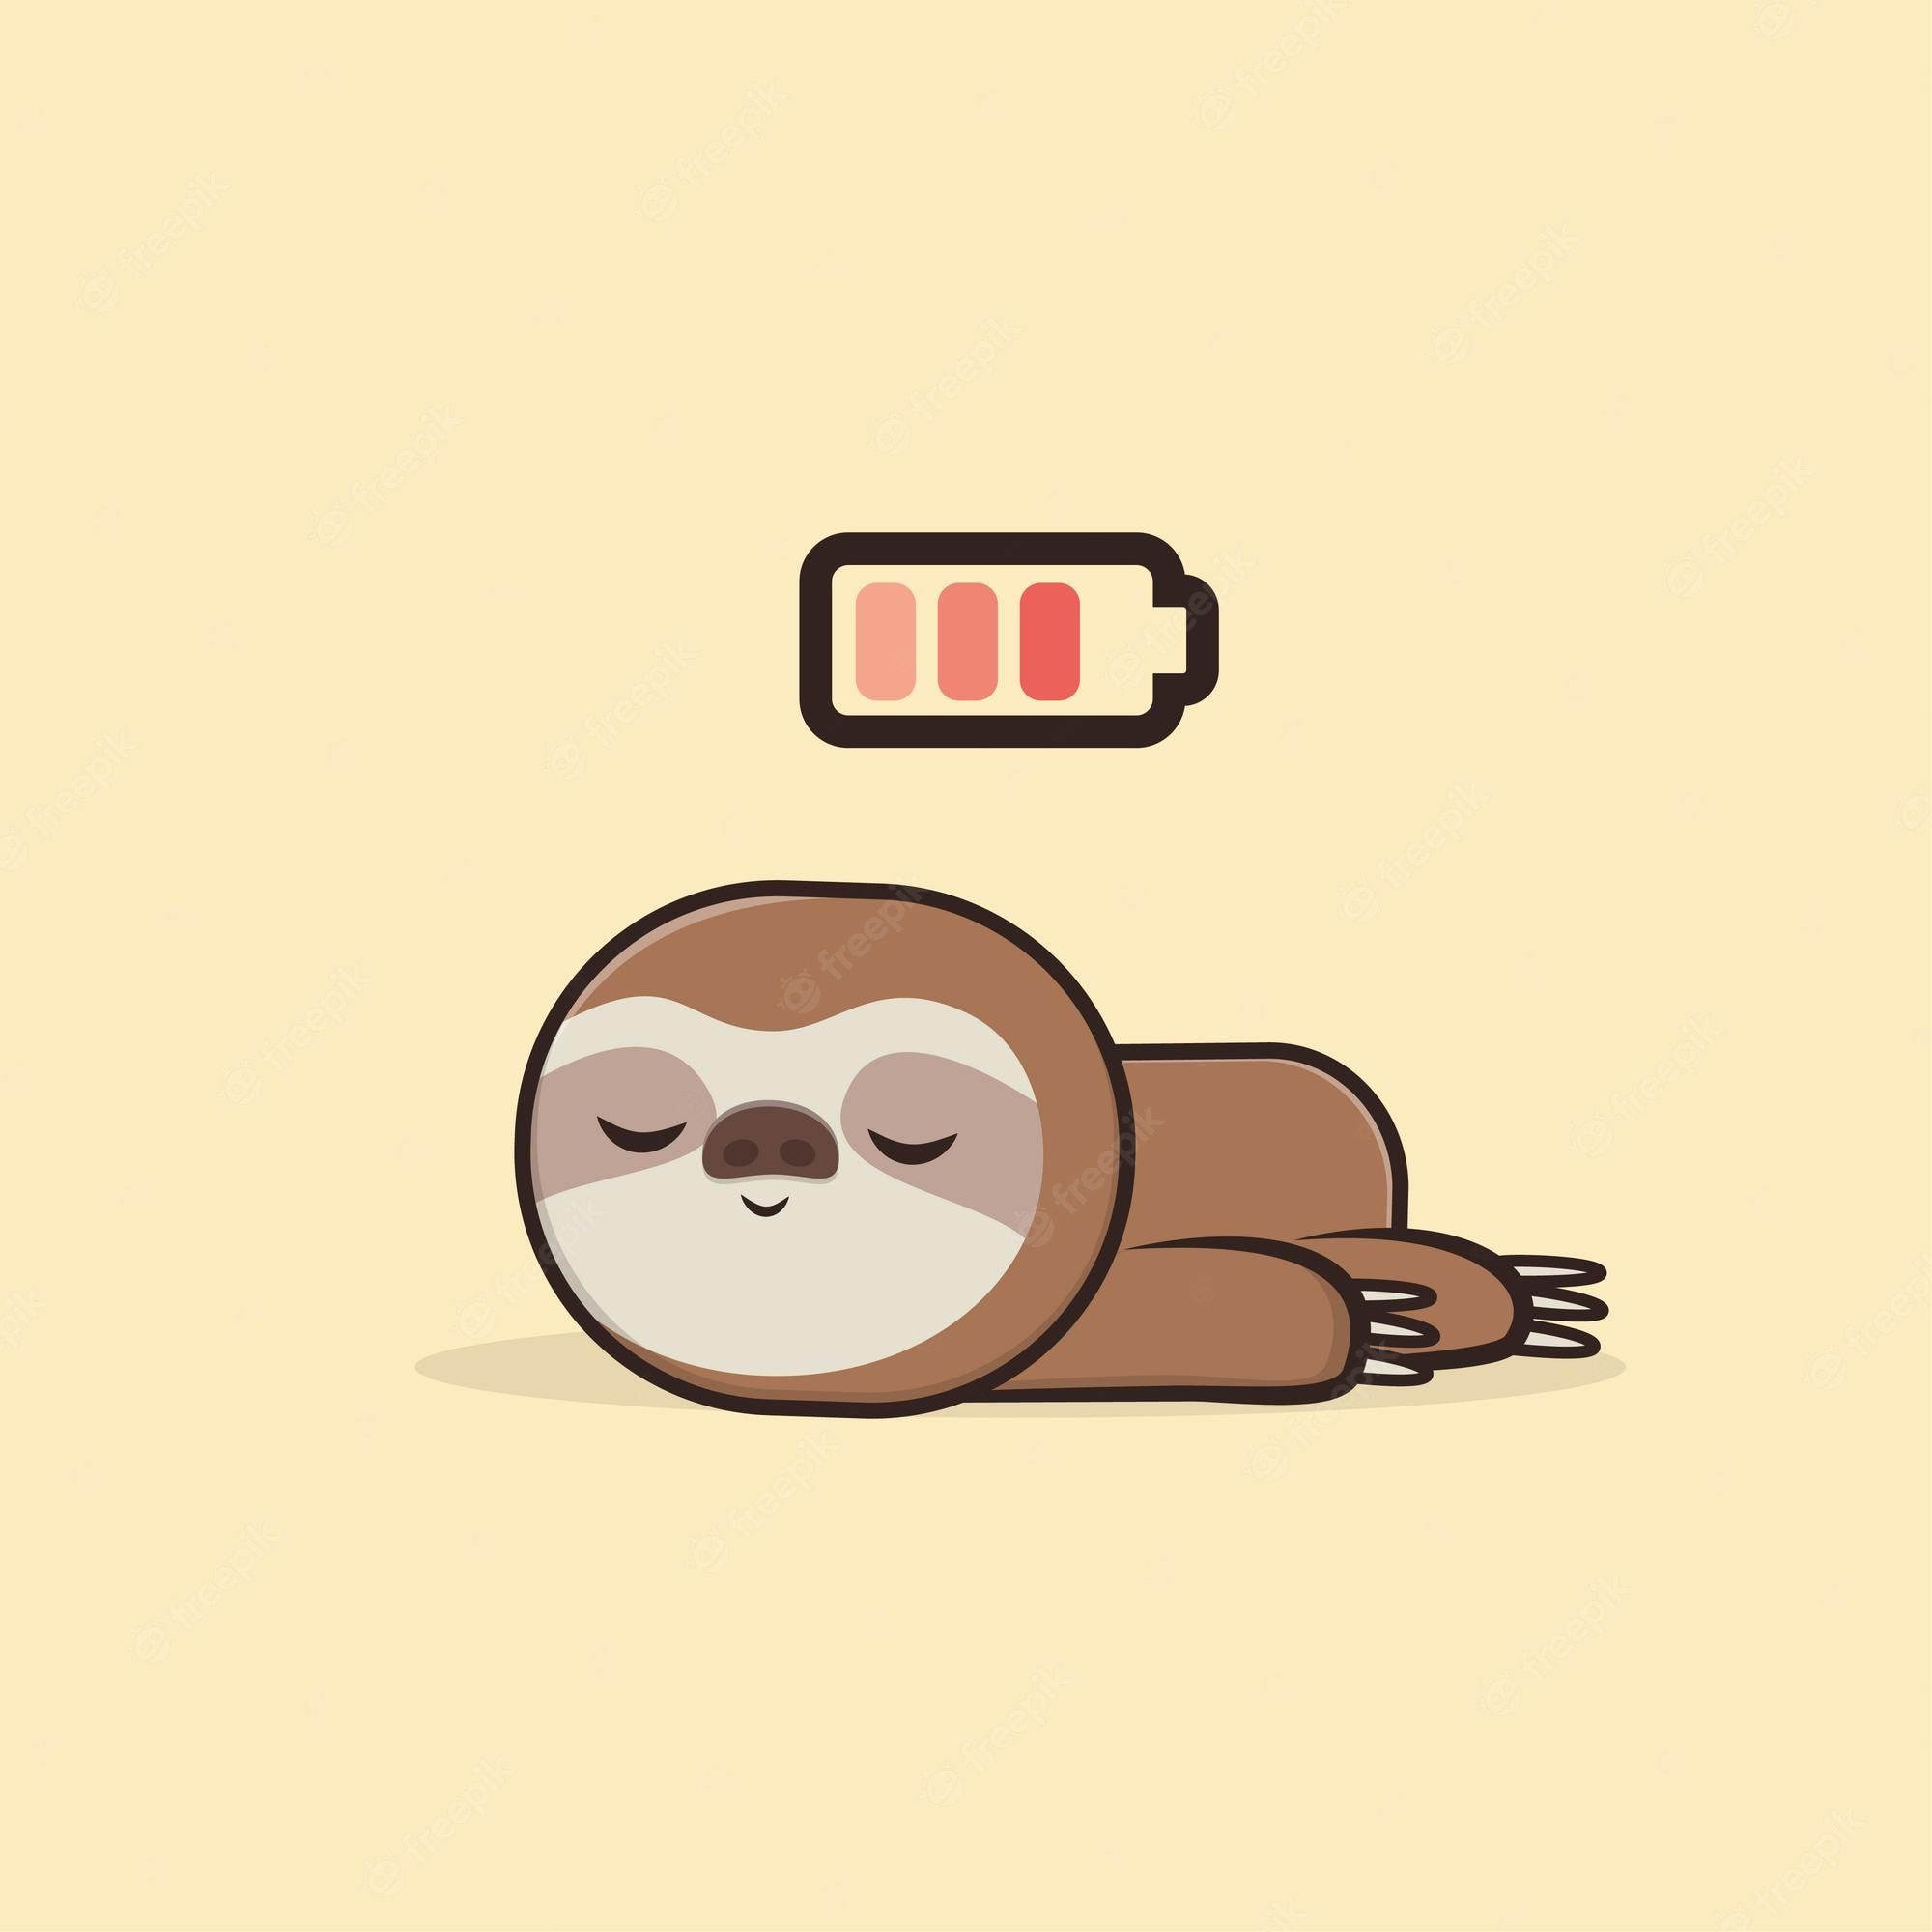 Sleeping Sloth Image